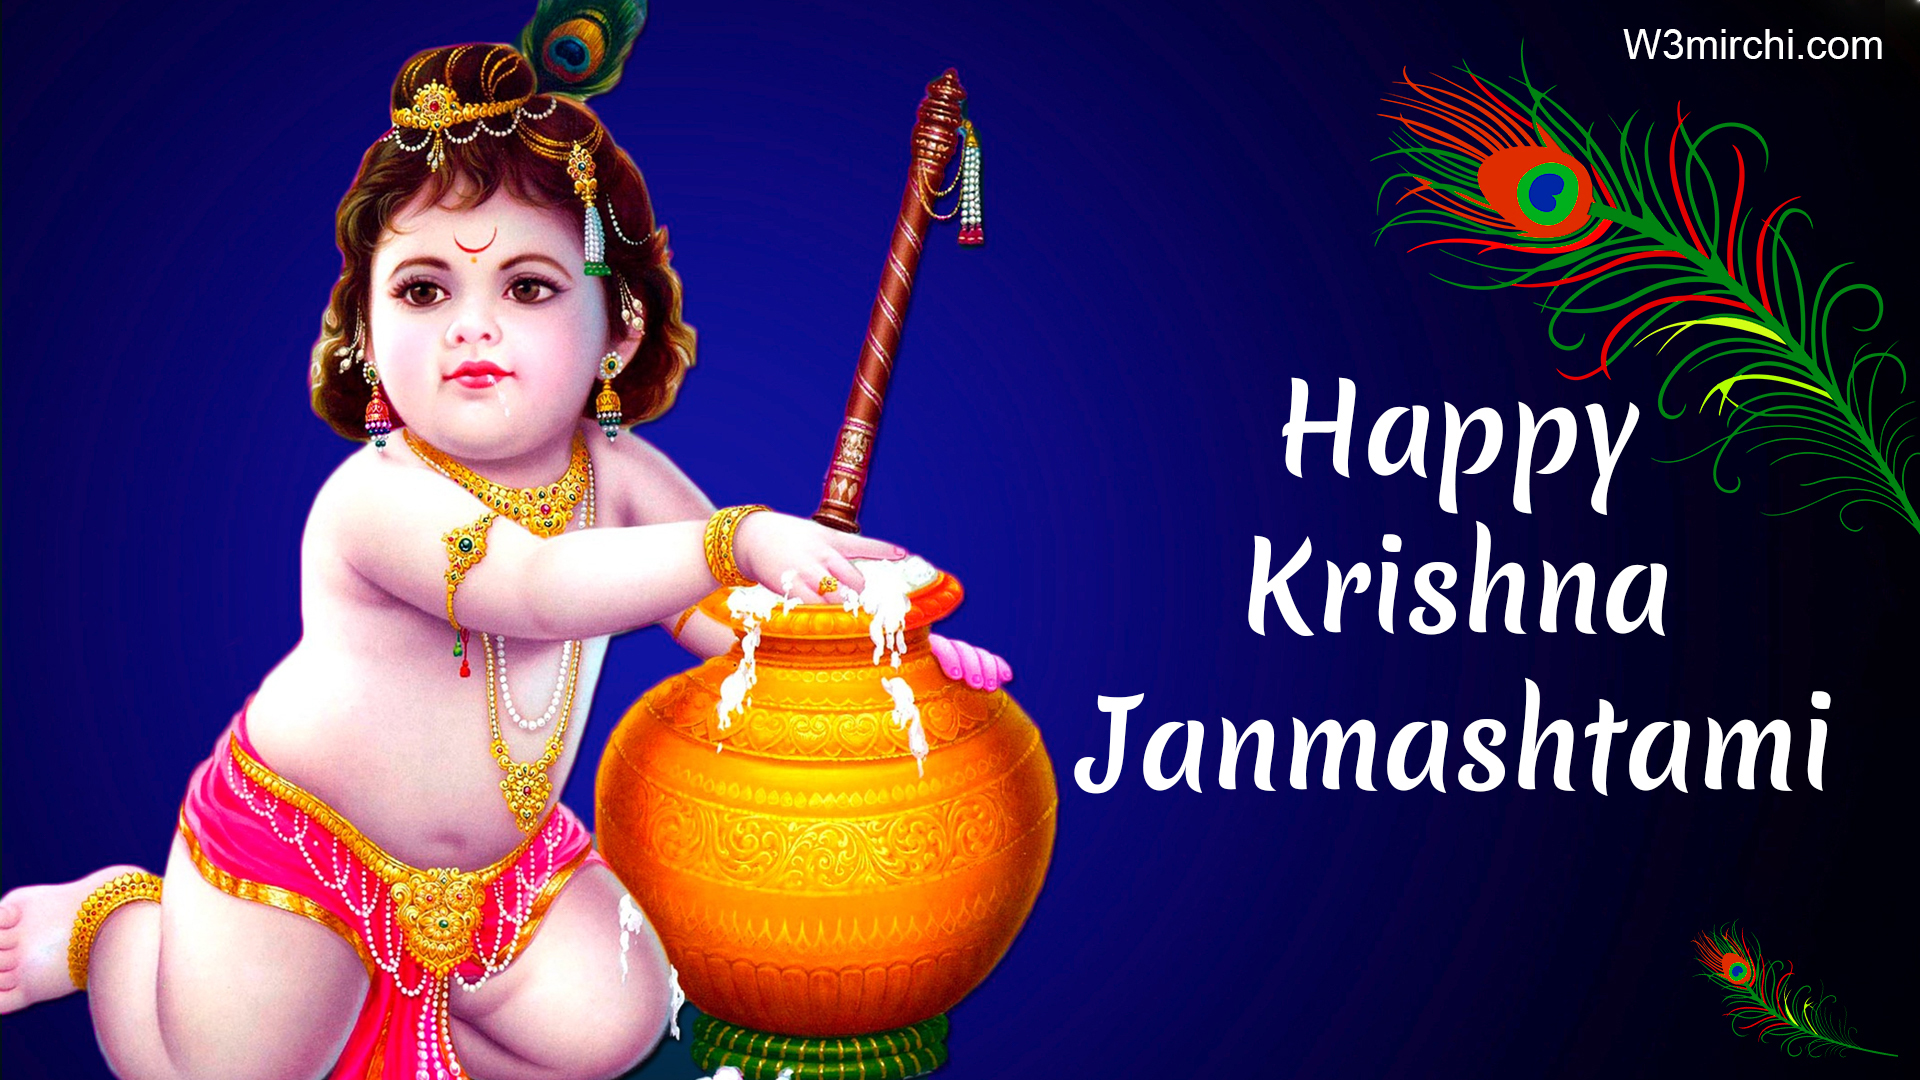 Krishna Janmashtami Wishes